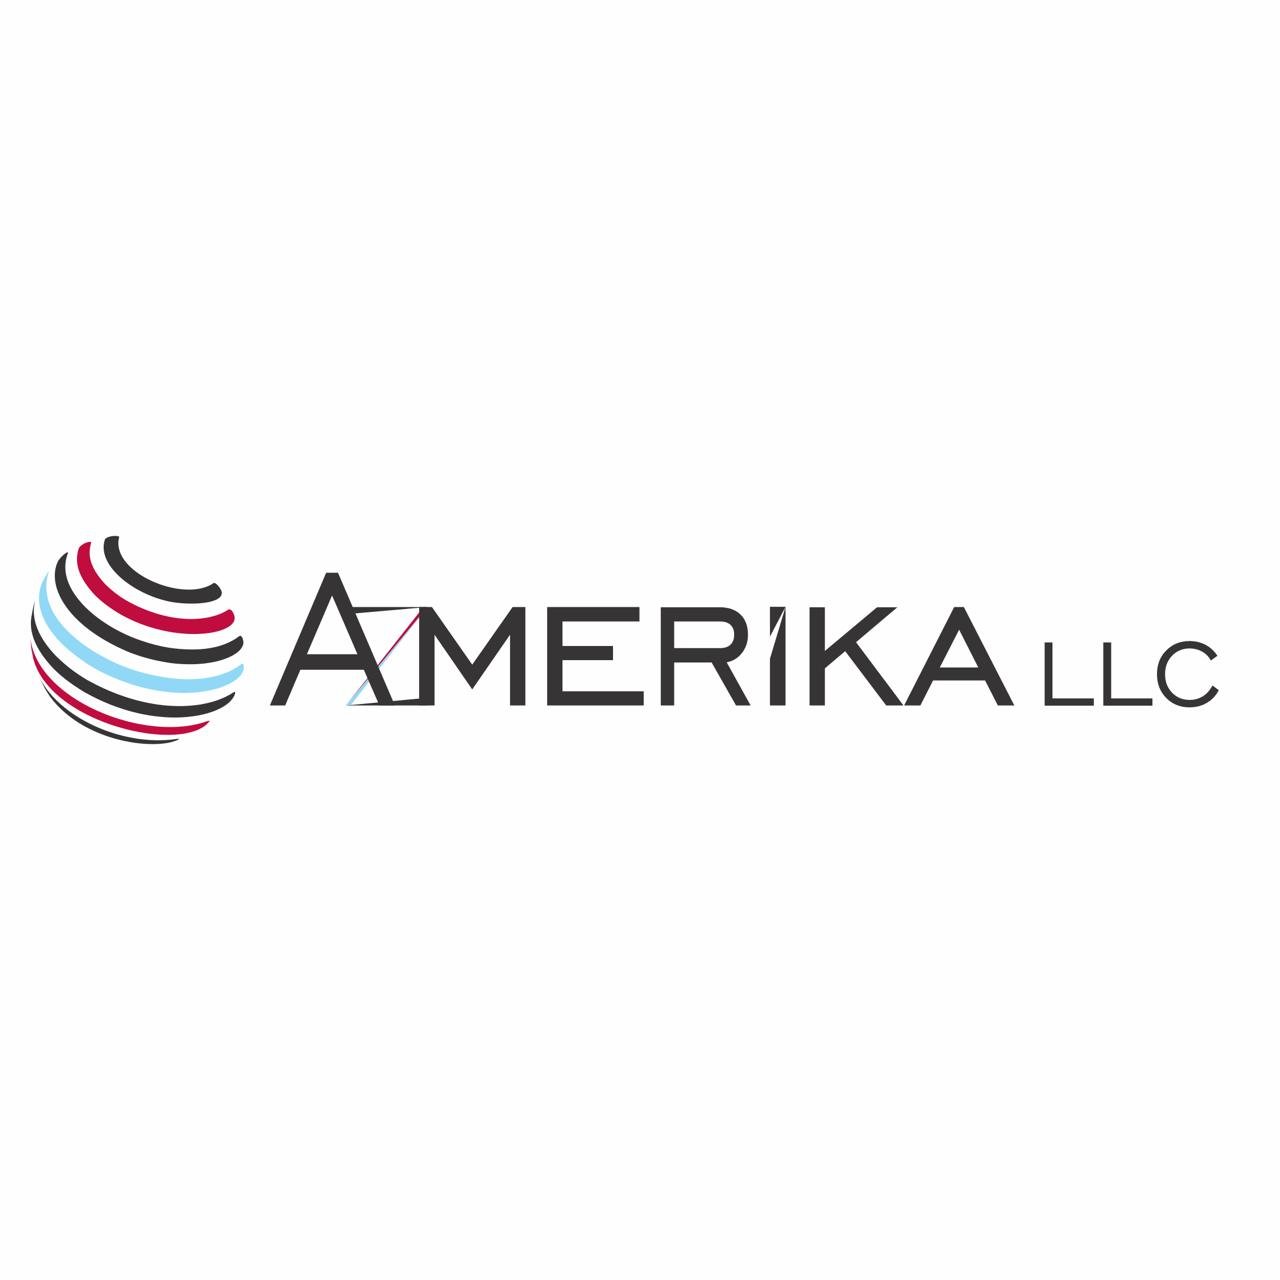 Azmerika LLC